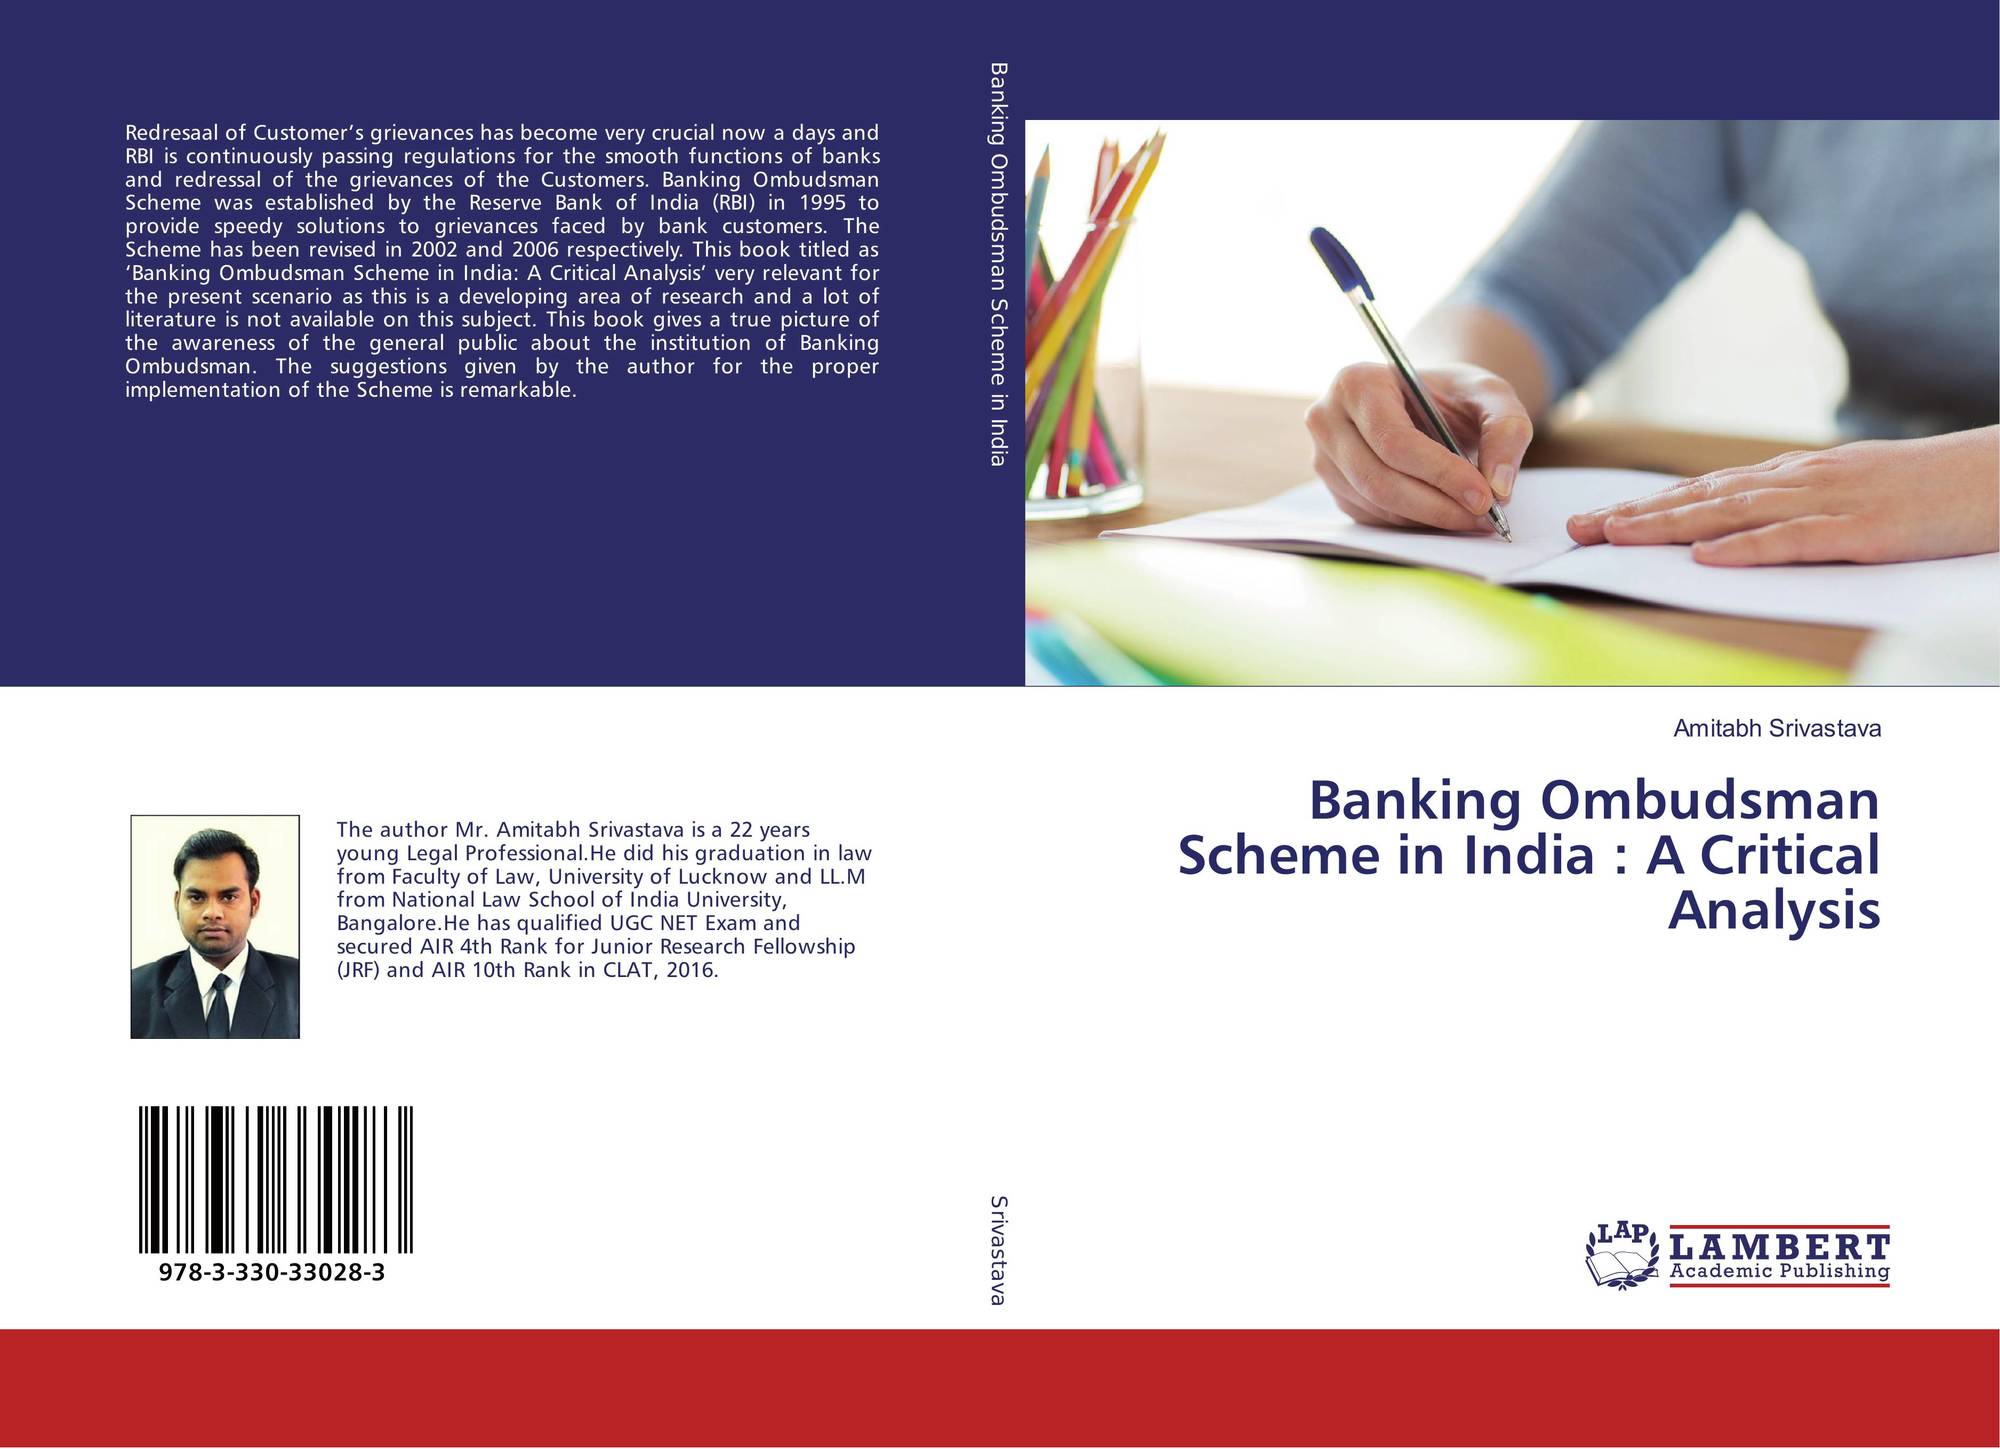 case study on banking ombudsman india